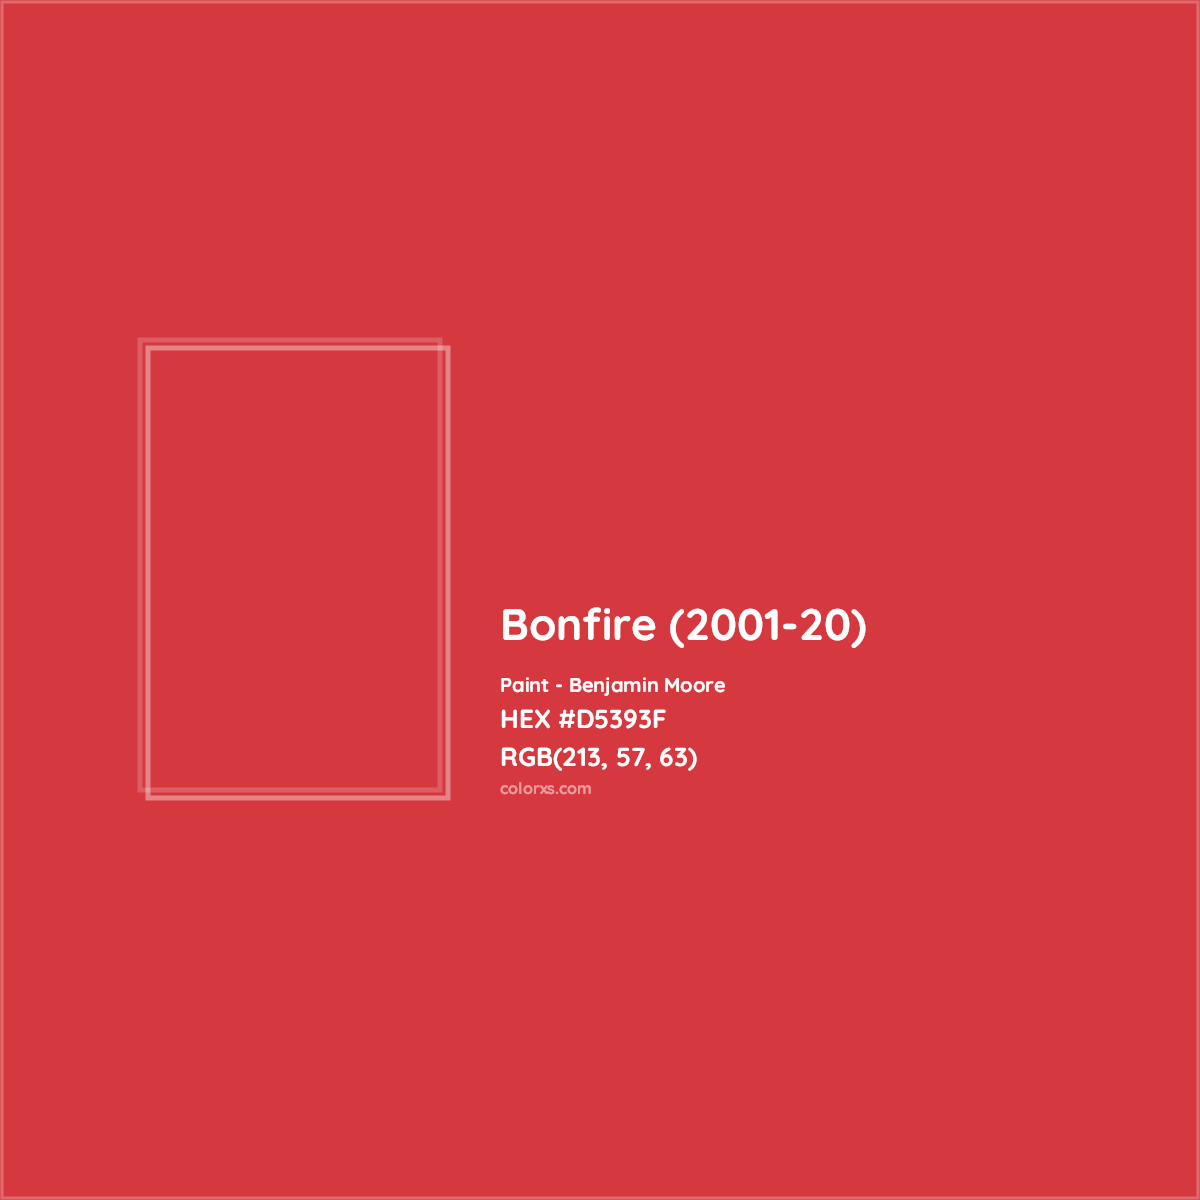 HEX #D5393F Bonfire (2001-20) Paint Benjamin Moore - Color Code